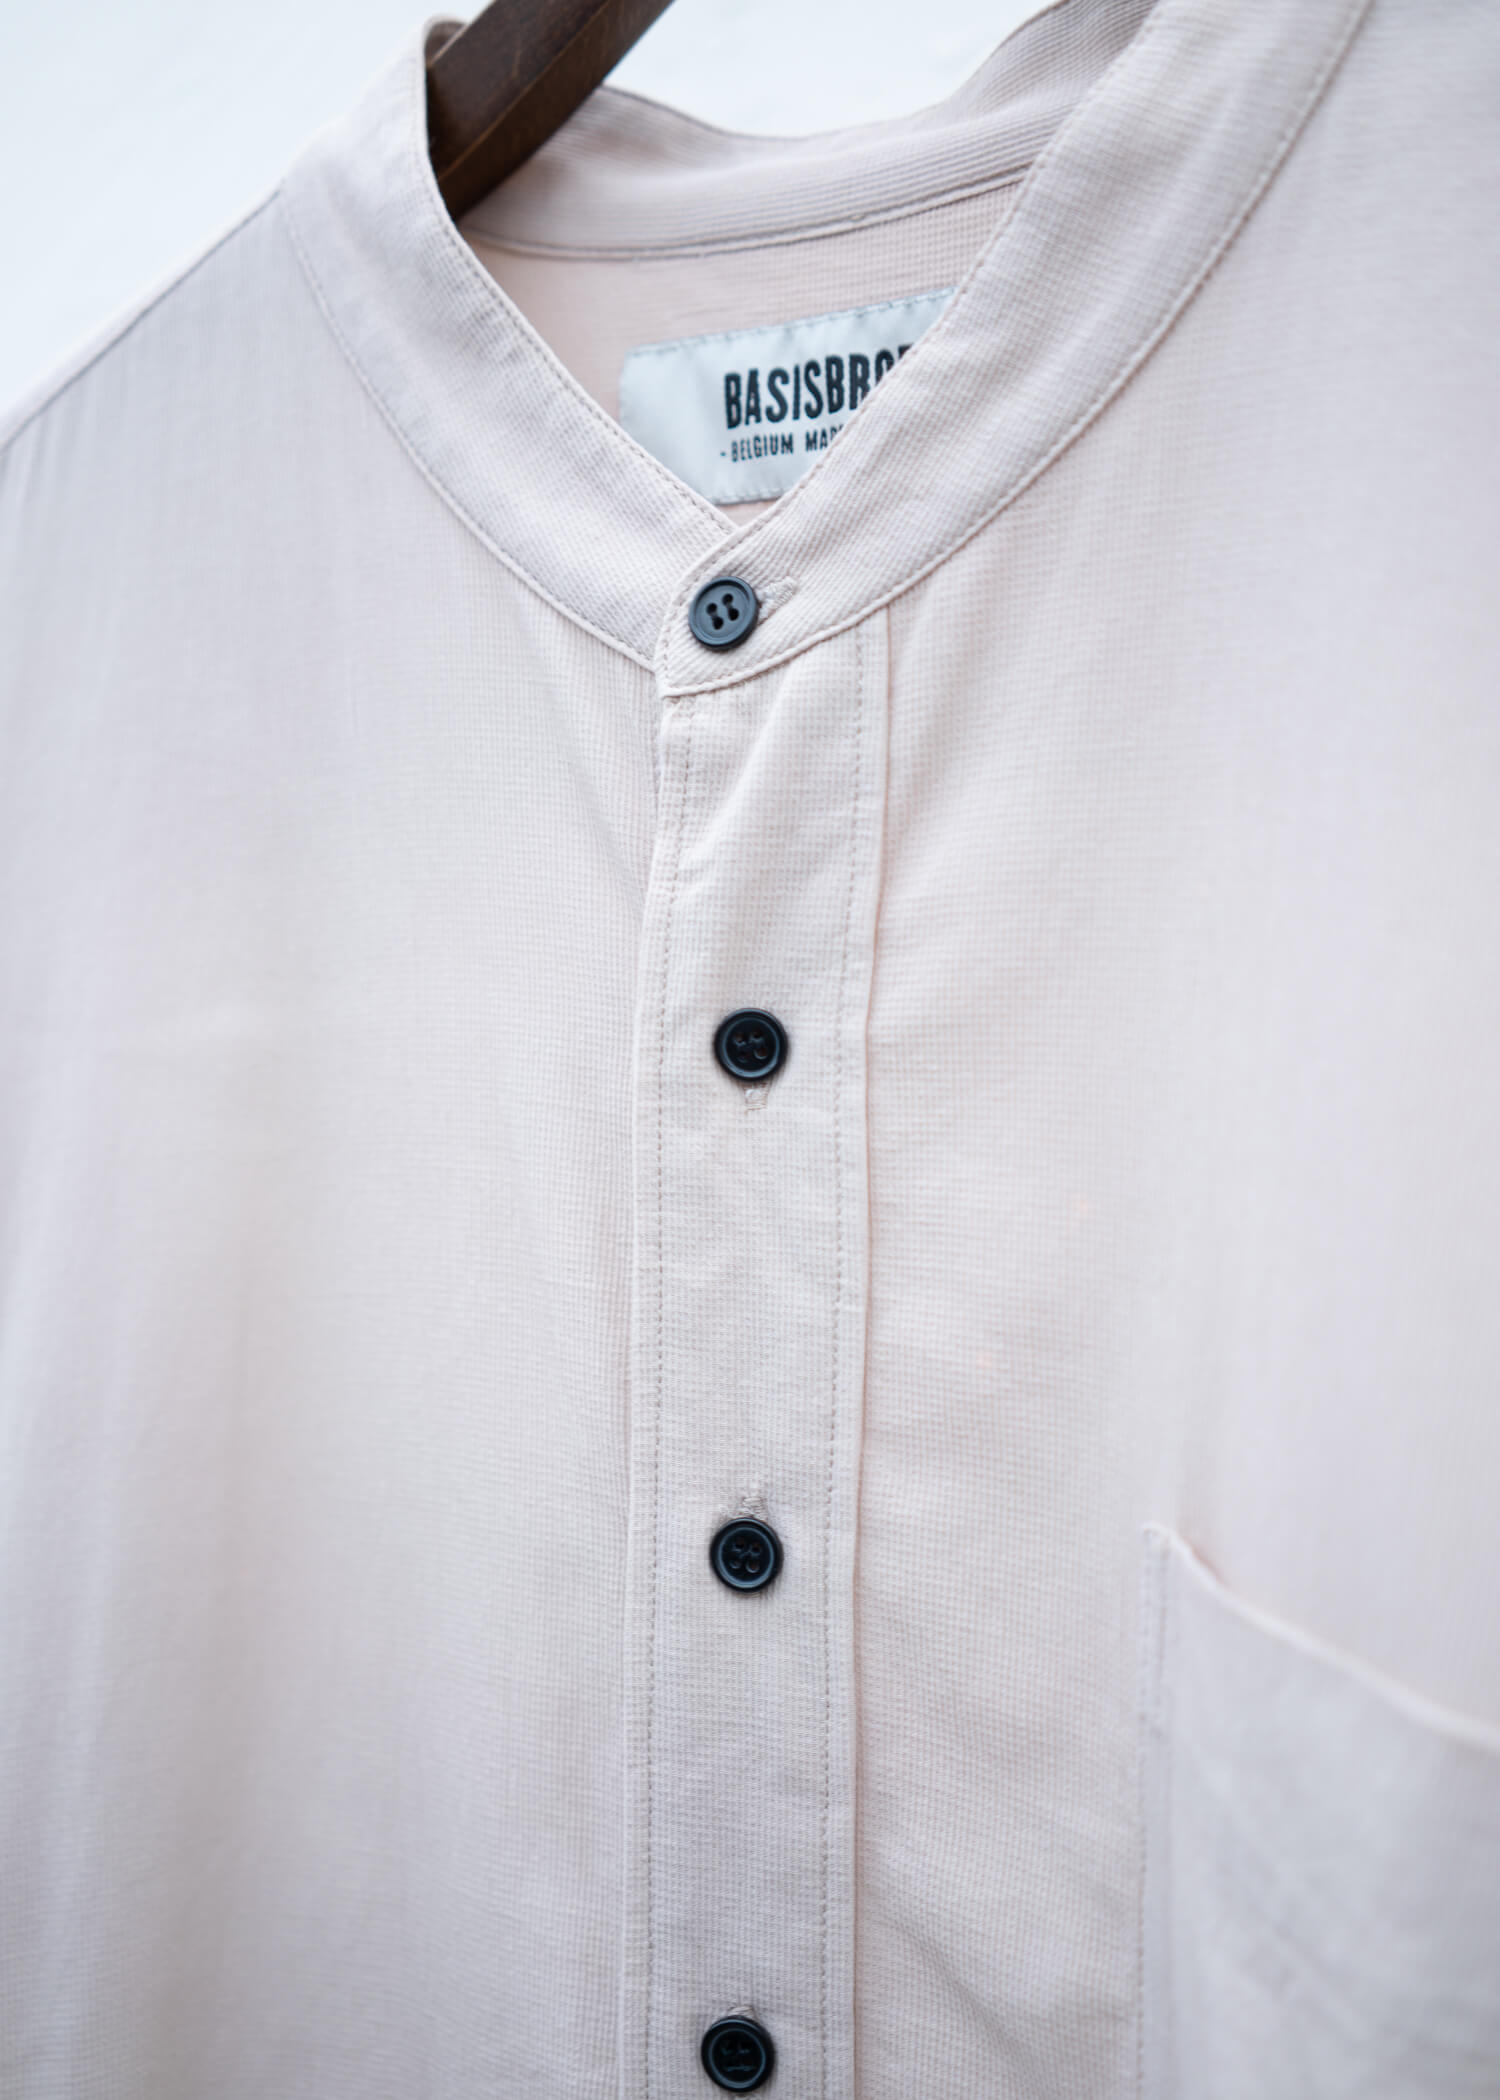 BASISBROEK Cotton Shirt